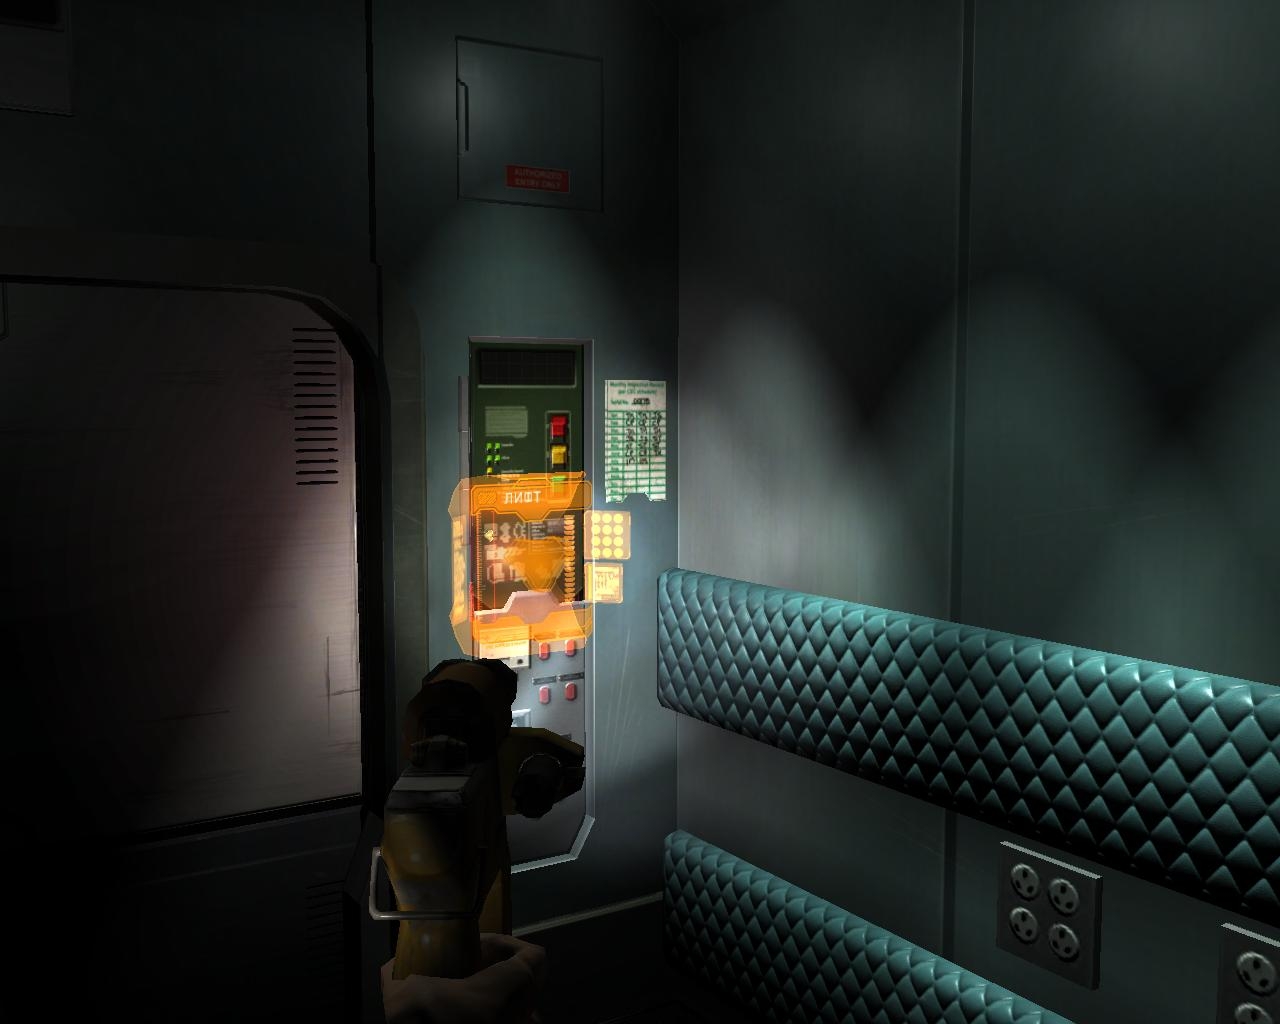 Dead Space 2 системные требования. Dead Space 2 Скриншоты из игры. Your space 2